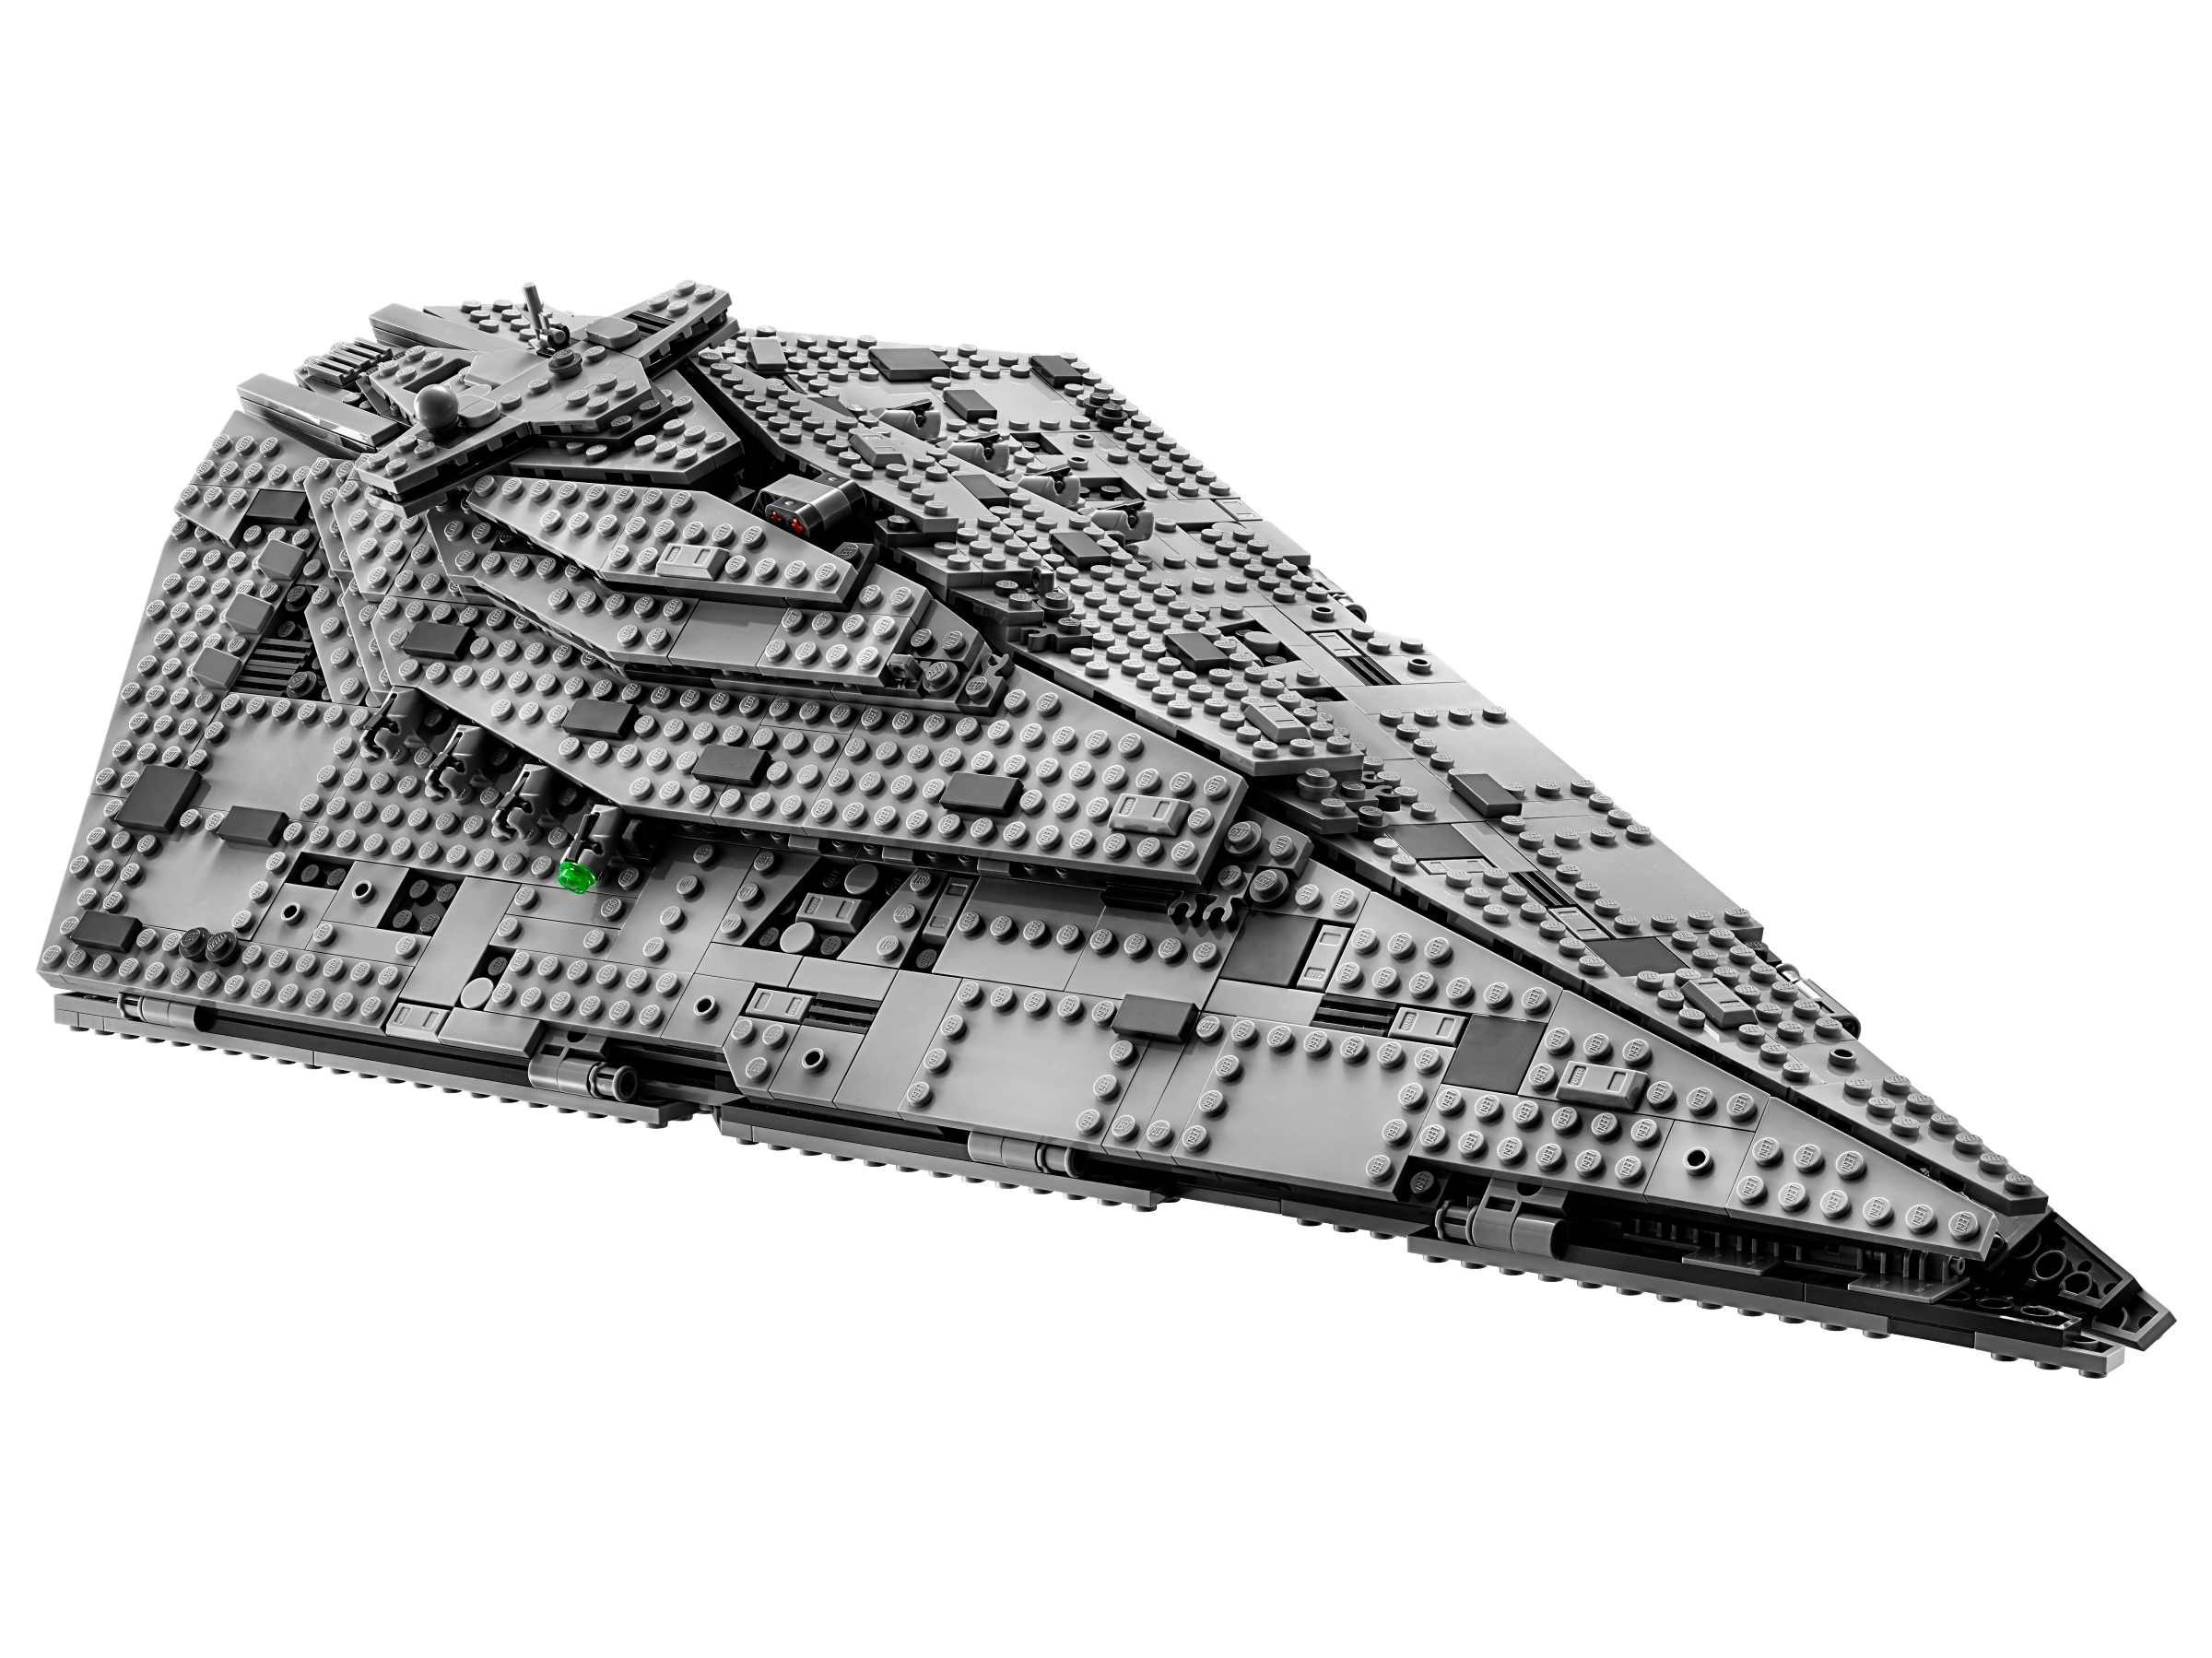 LEGO Star Wars Sammelkarten Serie 1 First Order Star Destroyer 218